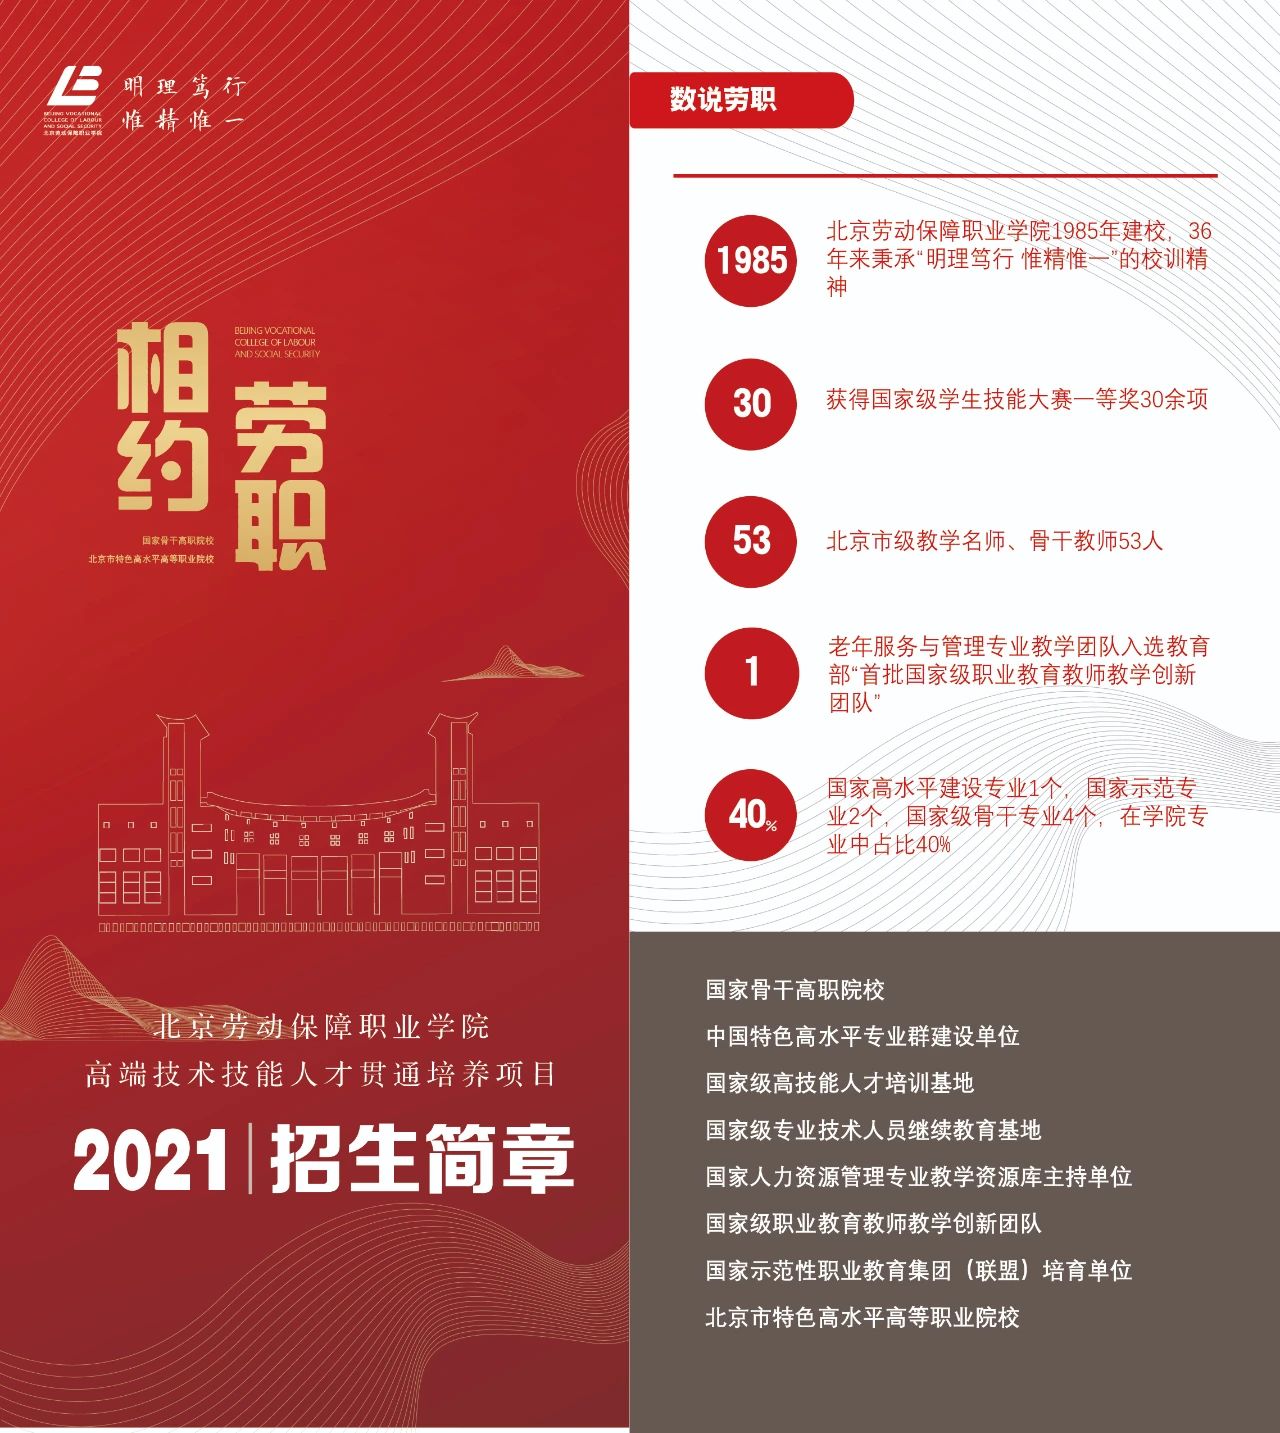 北京劳动保障职业学院2021年高端技术技能人才贯通培养项目招生简章发布